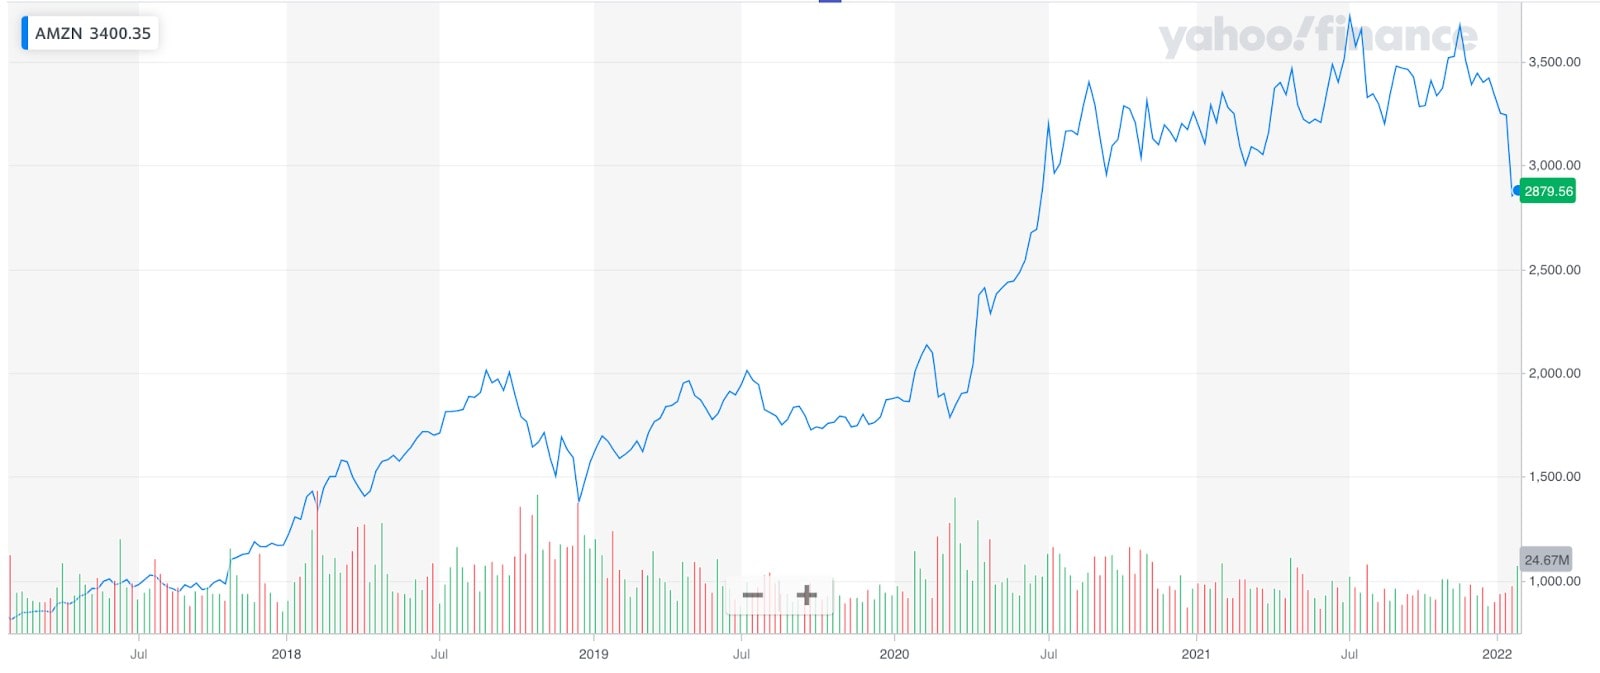 Historical price performance of Amazon stock